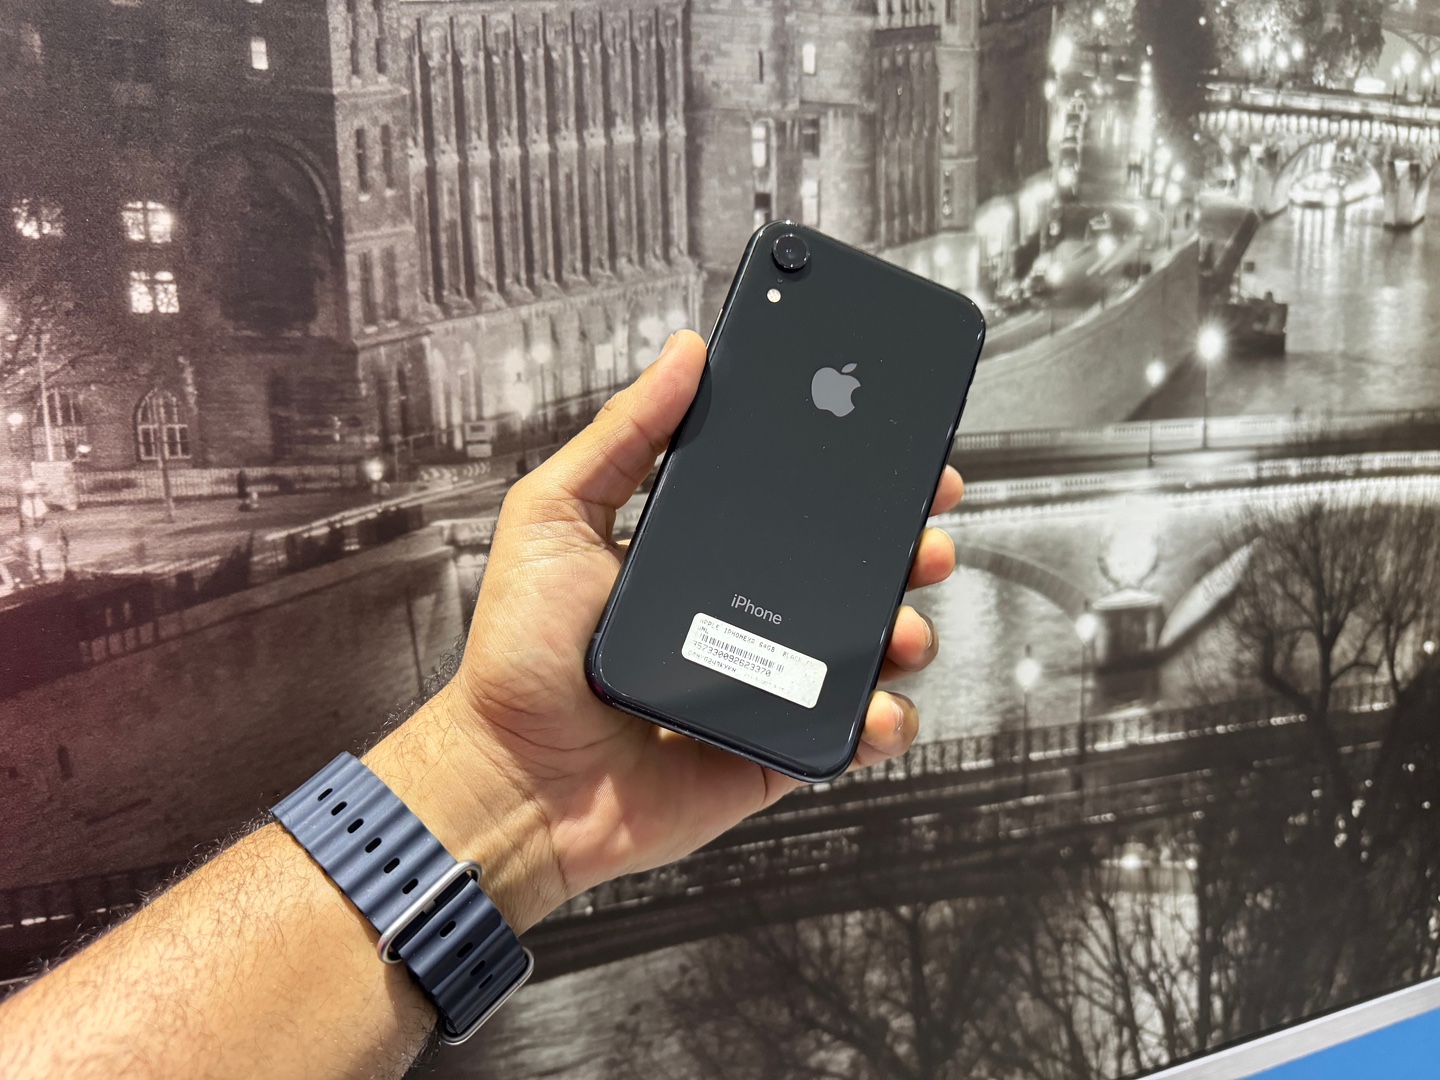 celulares y tabletas - iPhone XR 64GB Negro impecable Condiciones, Desbloqueado, Garantia, $ 11,900 NEG